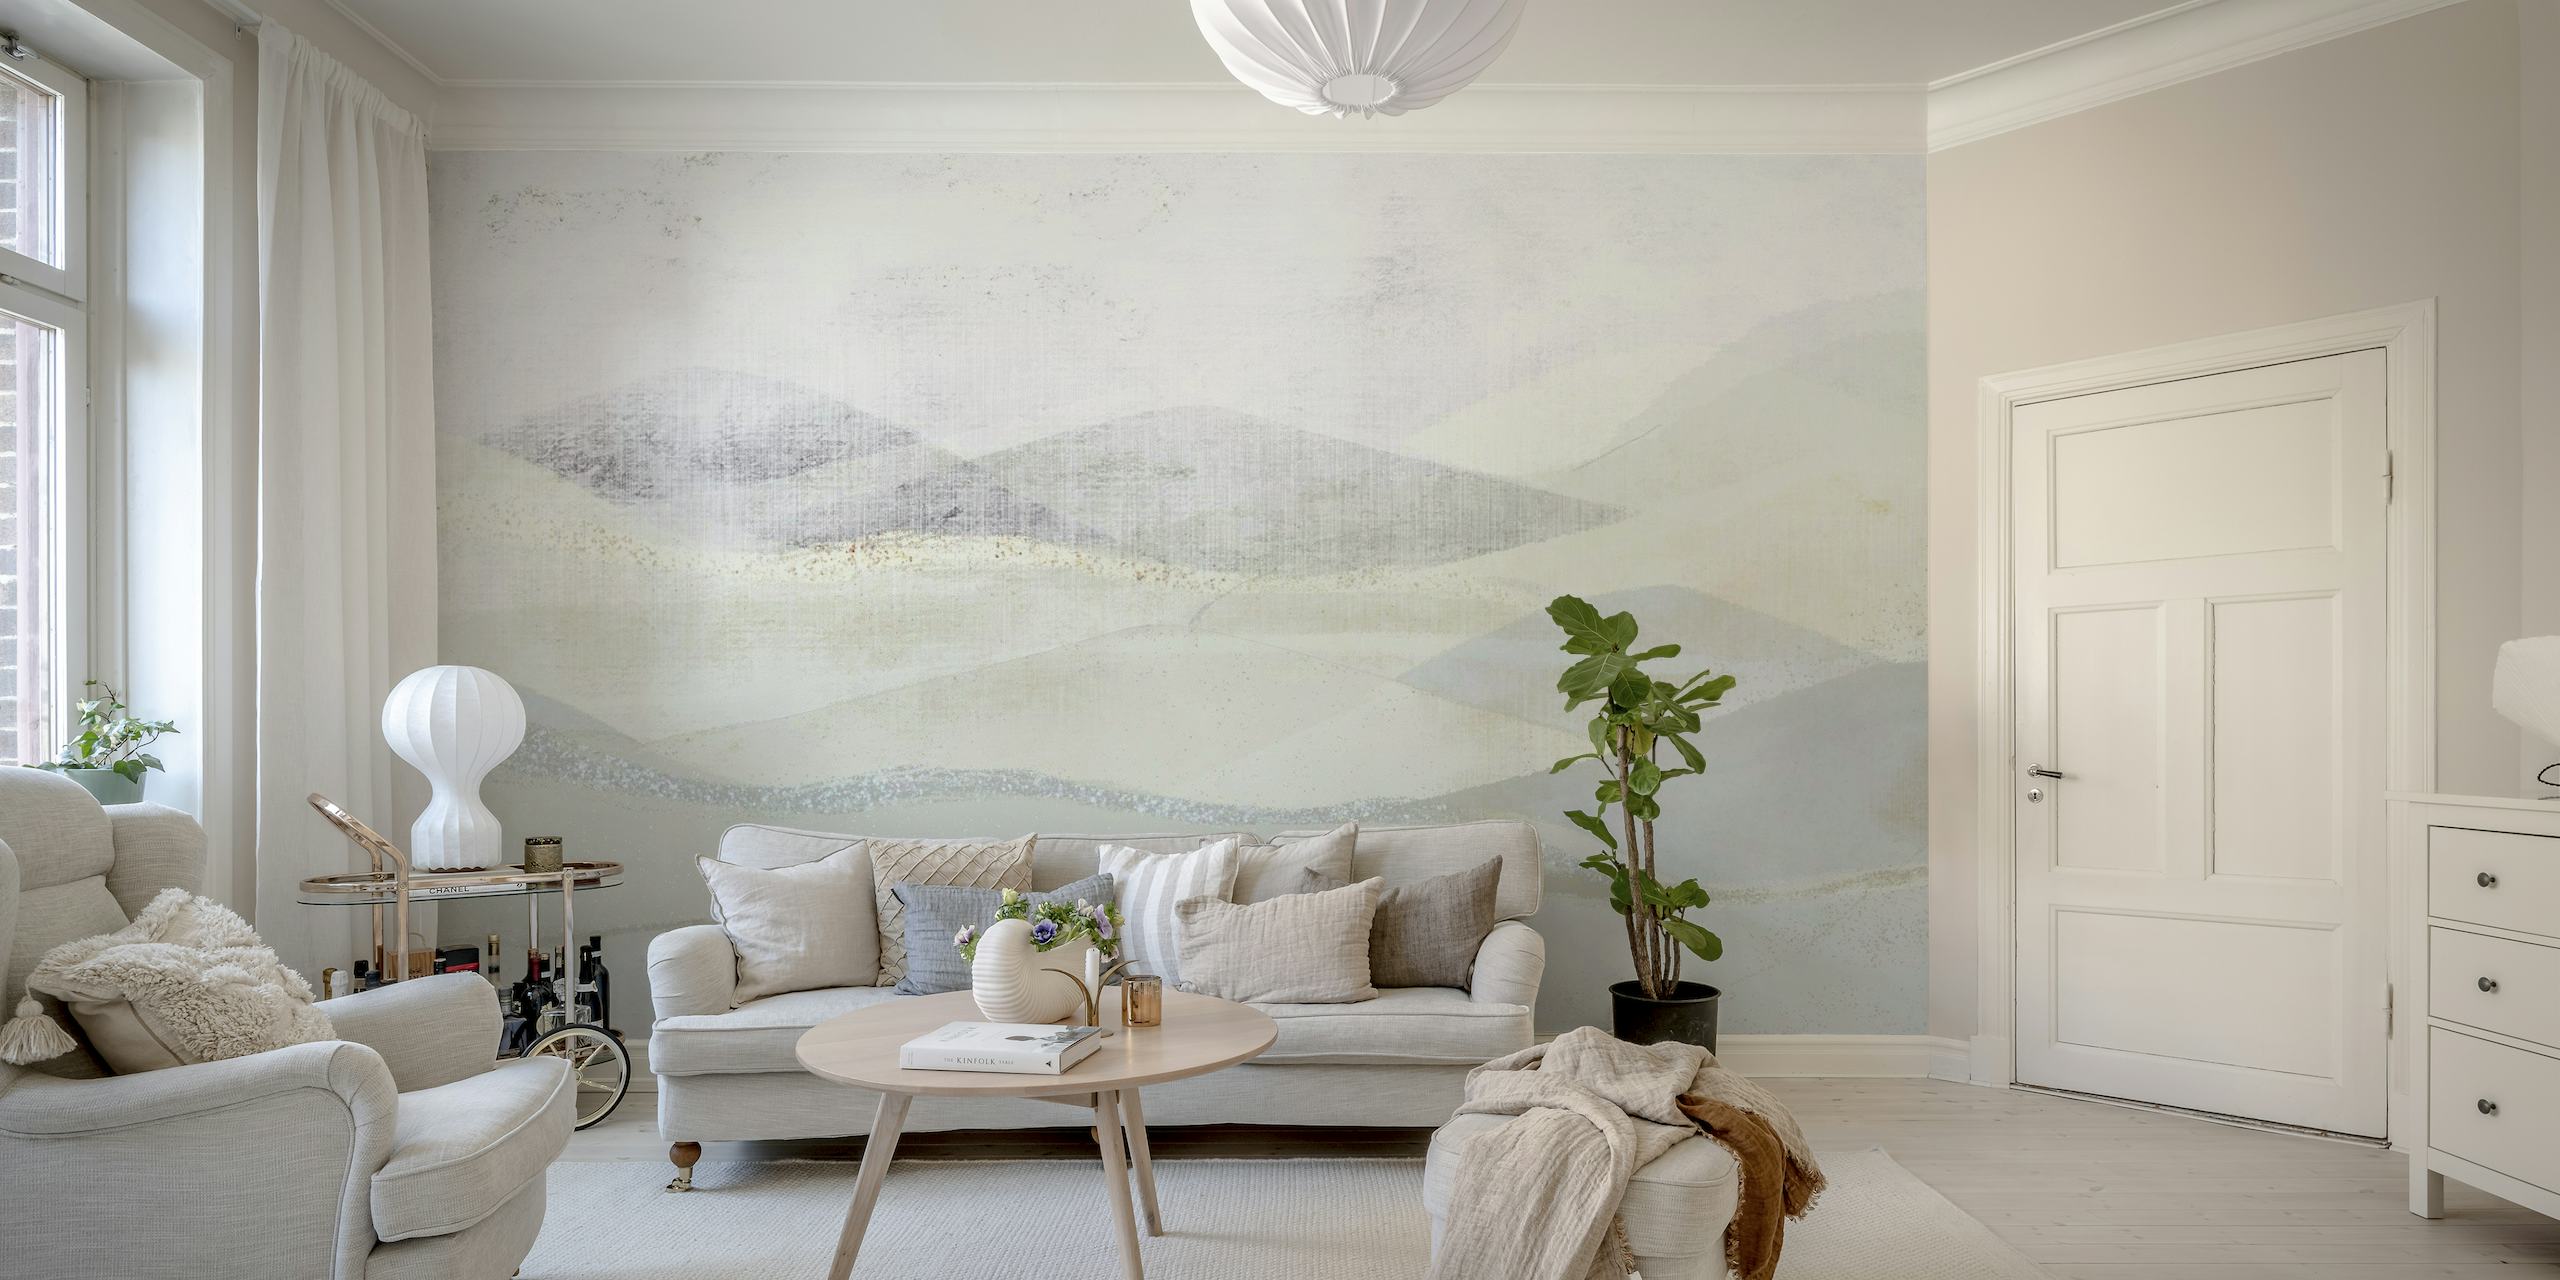 Apstraktni zidni mural s kremasto bijelim i mekim sivim koji podsjećaju na ledeni krajolik